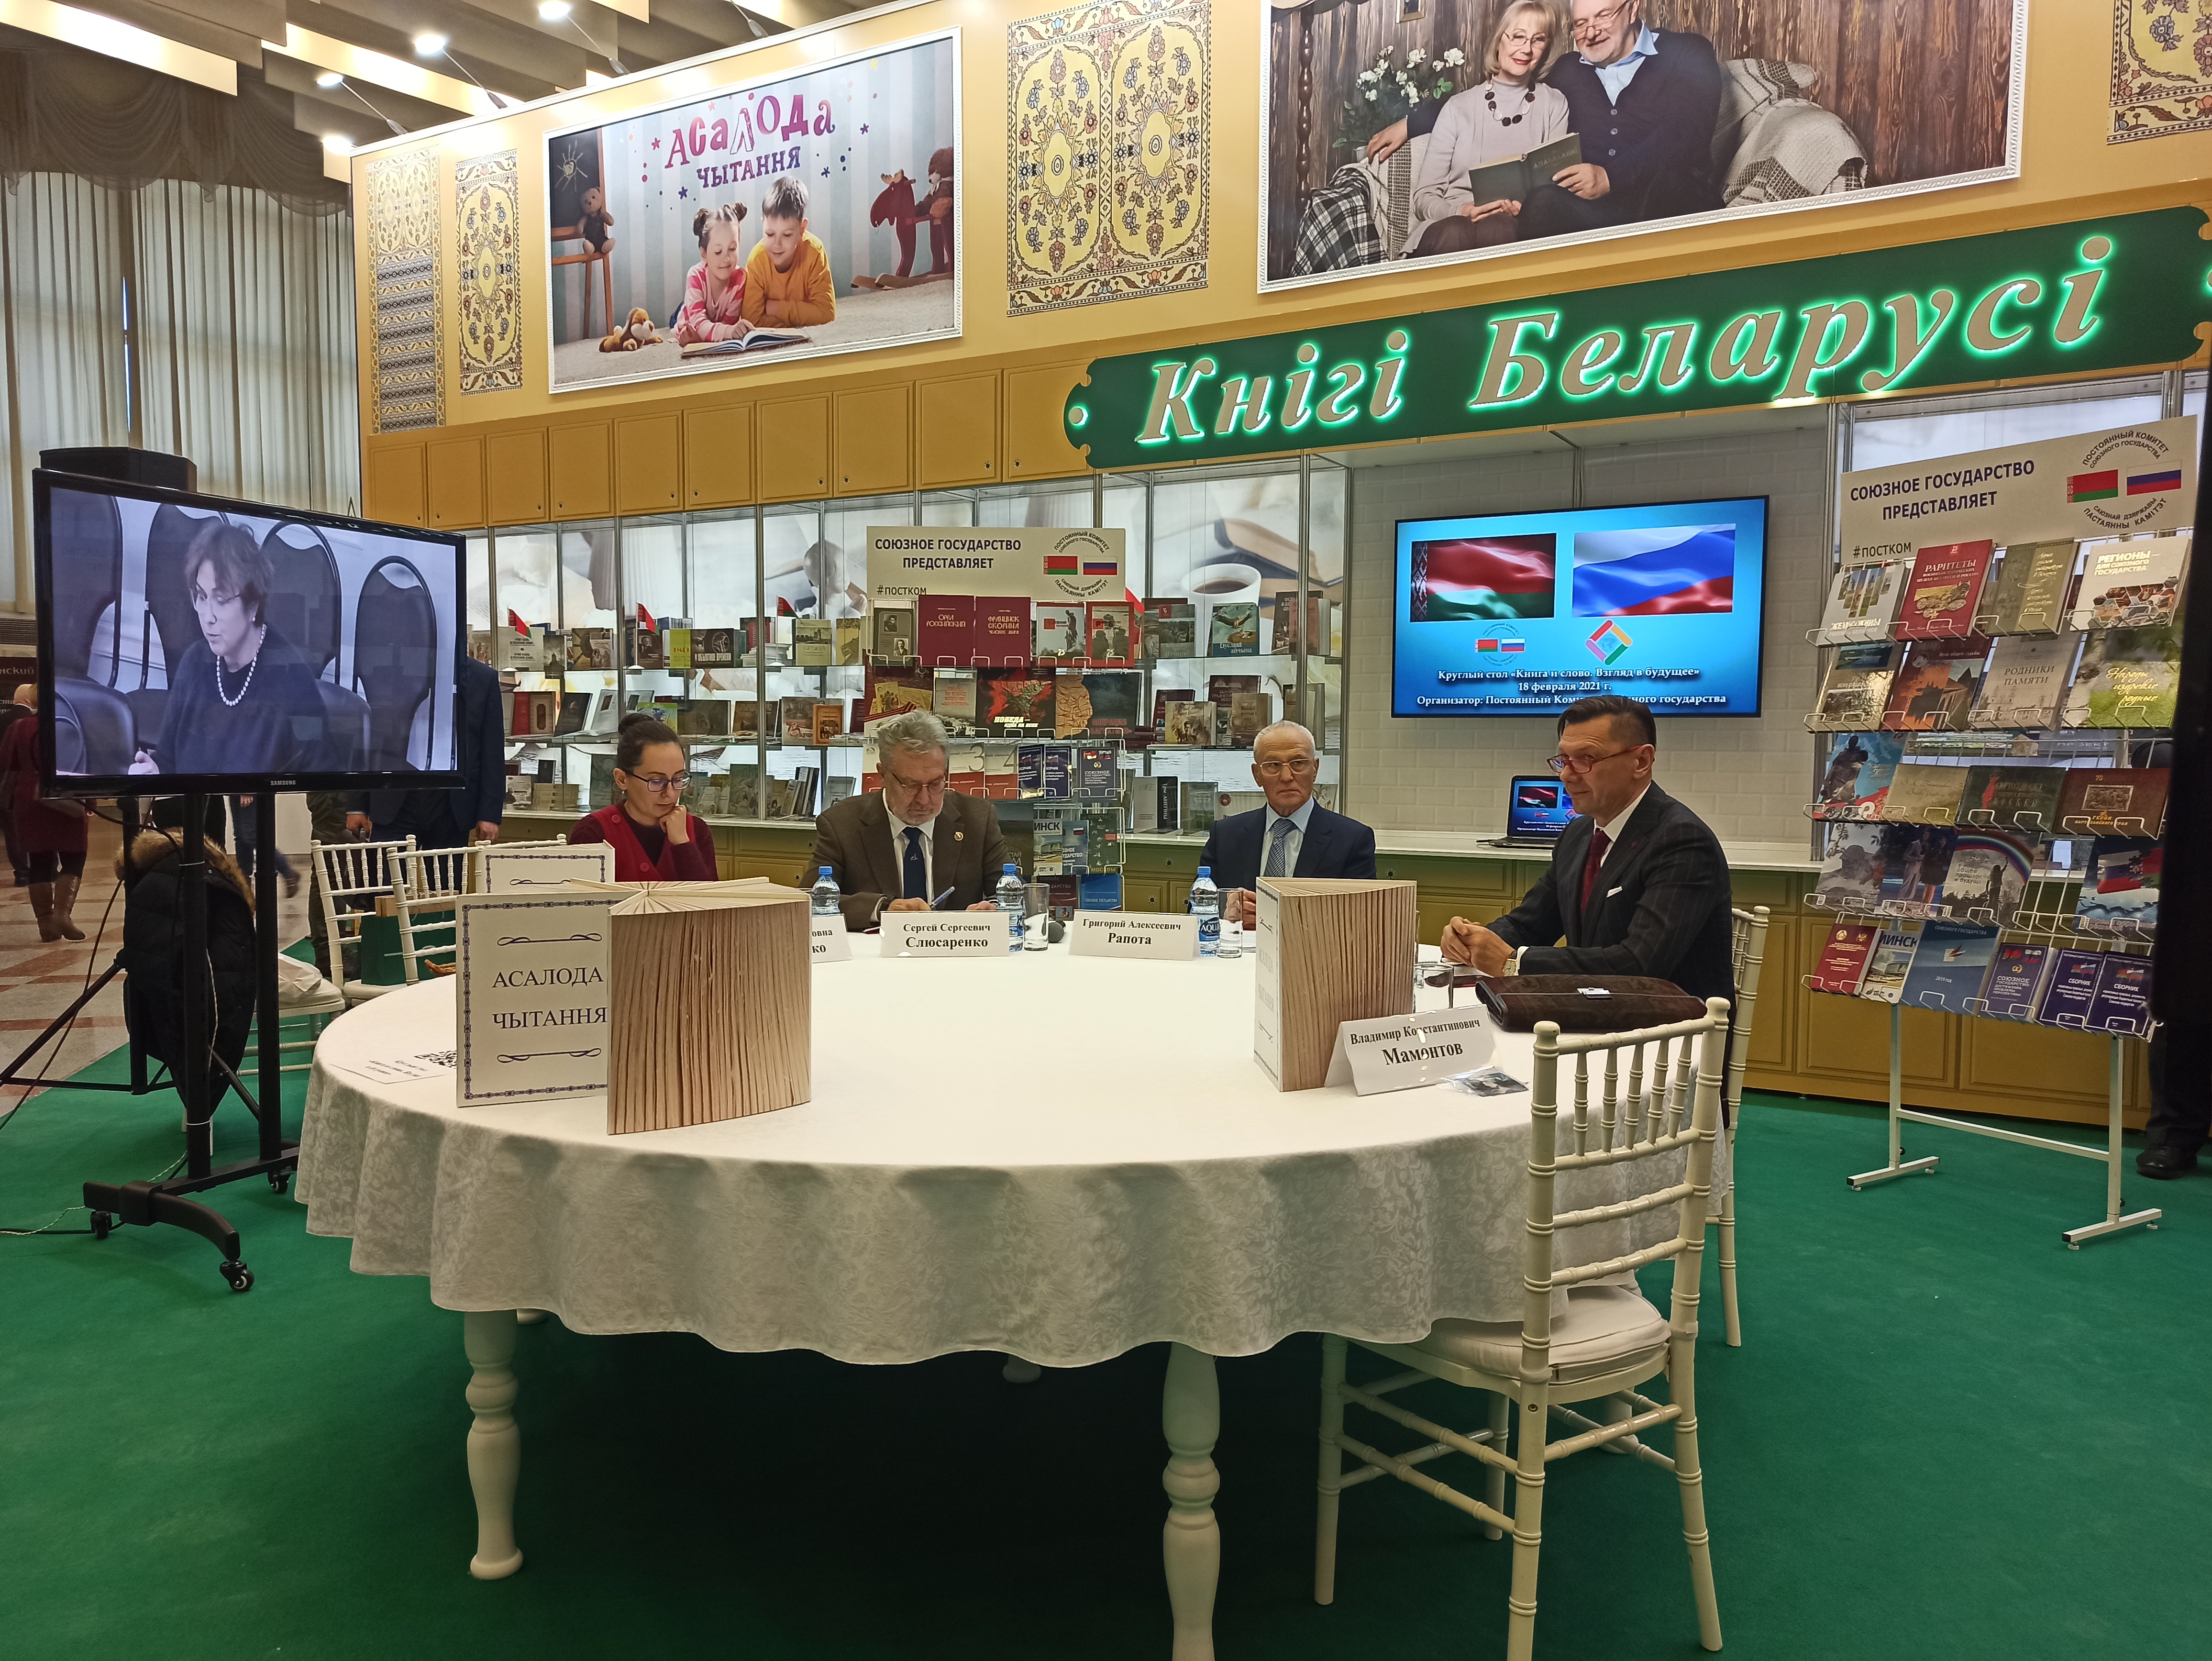 XXVIII Минская международная книжная выставка-ярмарка открылась в Минске